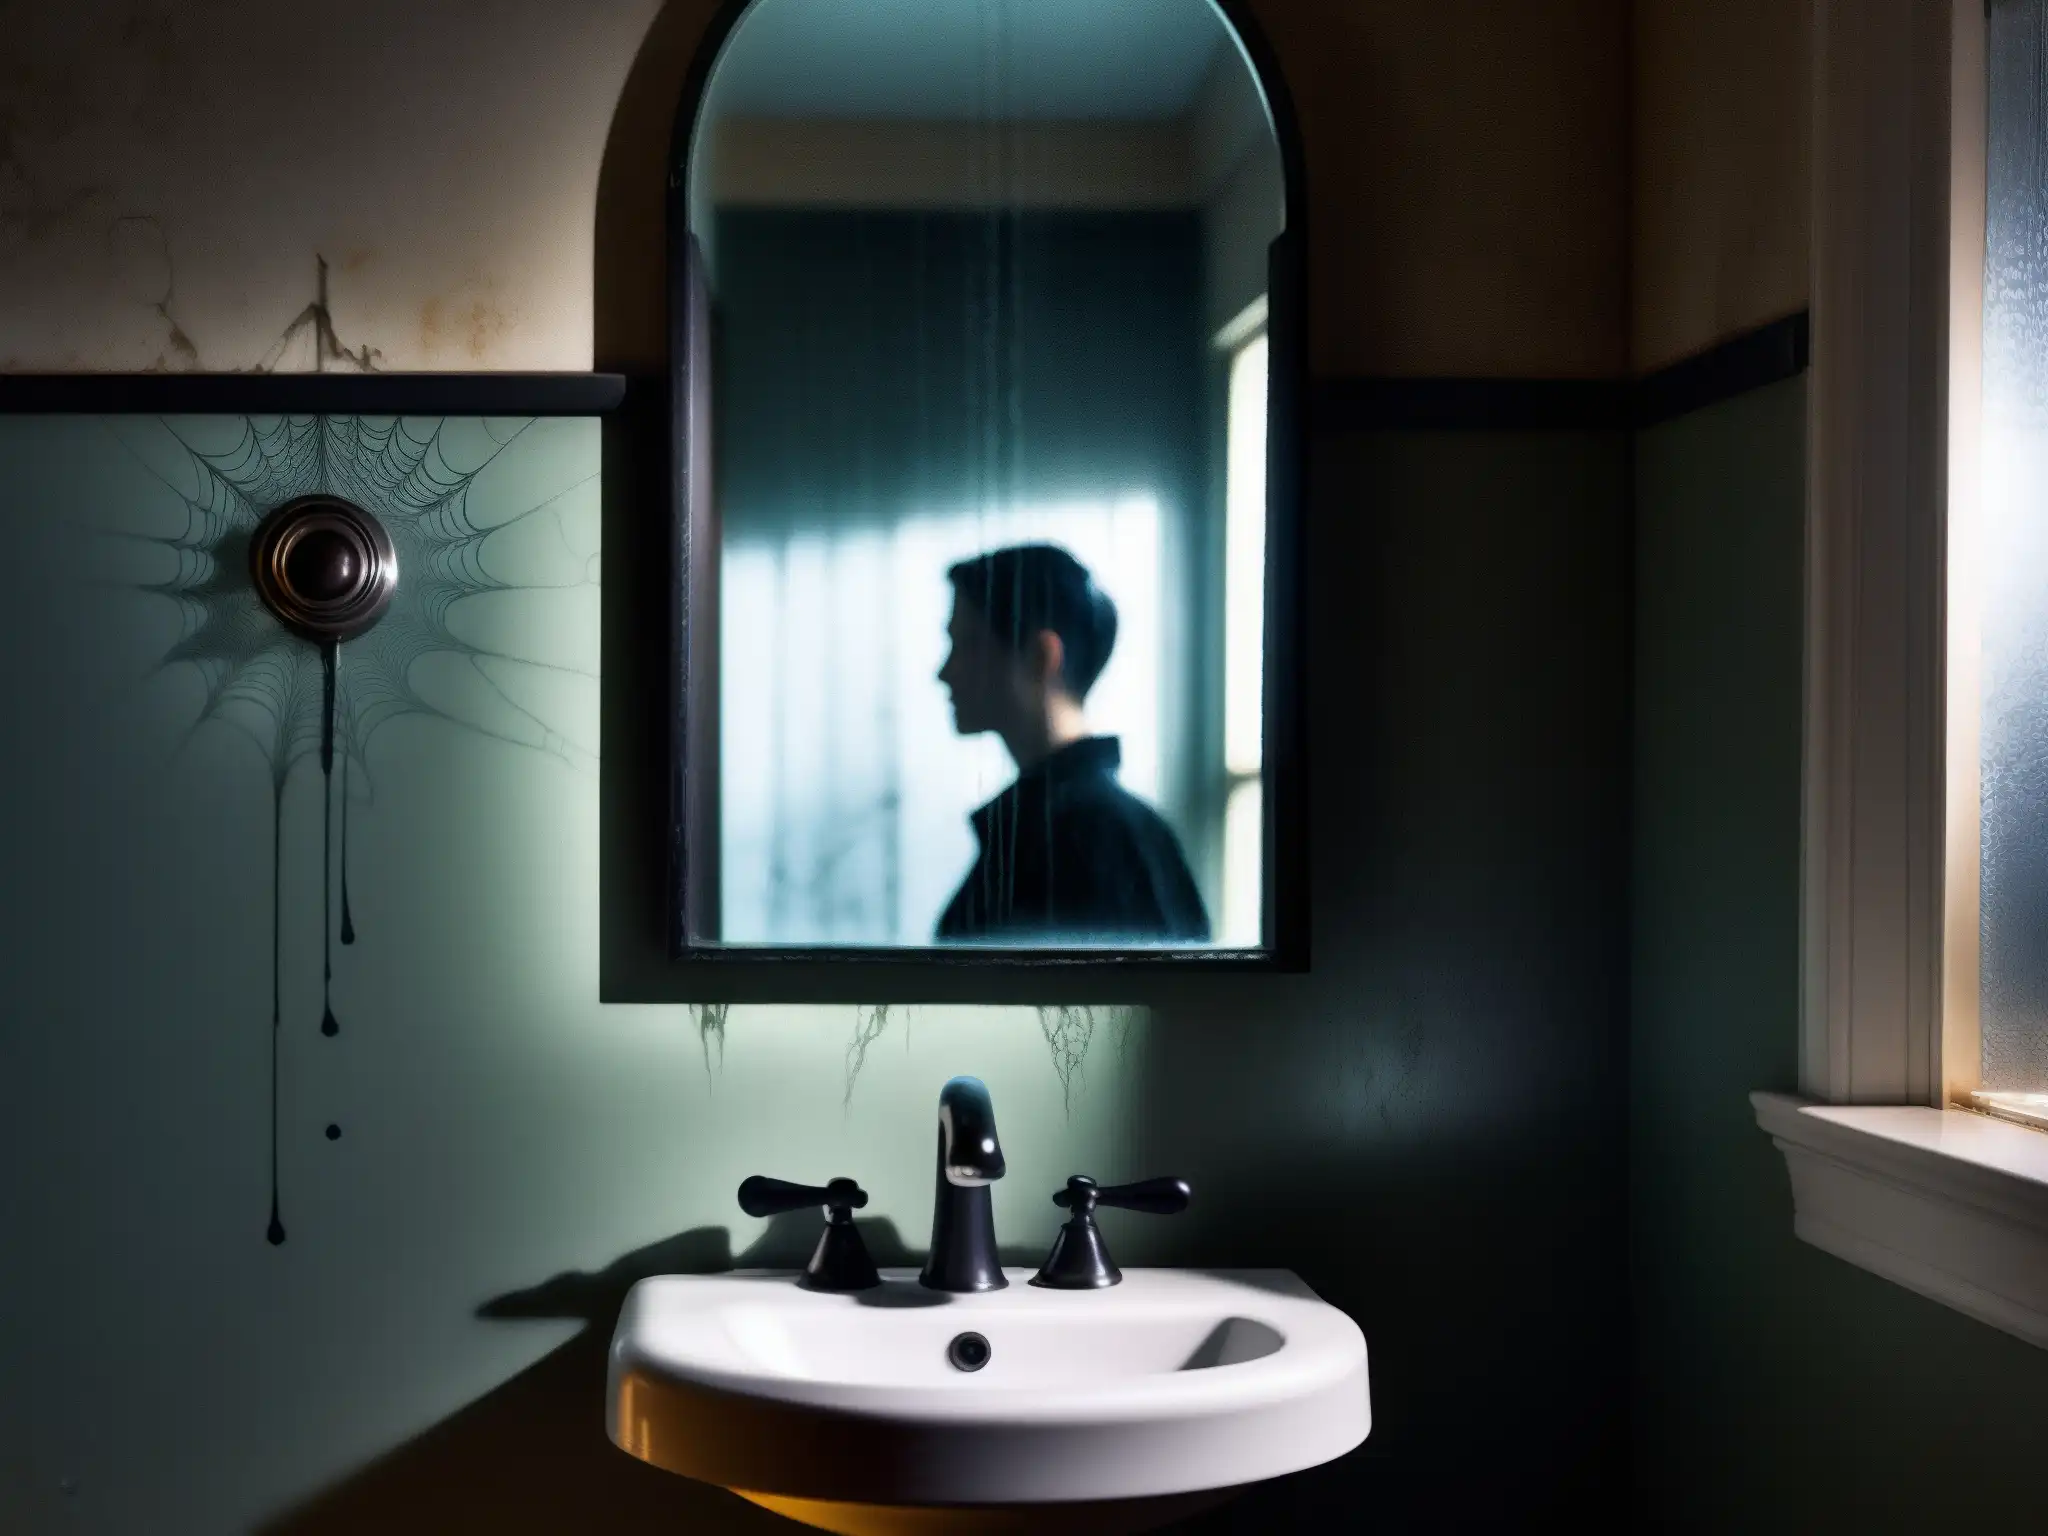 Un baño tenebroso y oscuro con espejo agrietado, telarañas y la silueta tenue de un misterioso reflejo